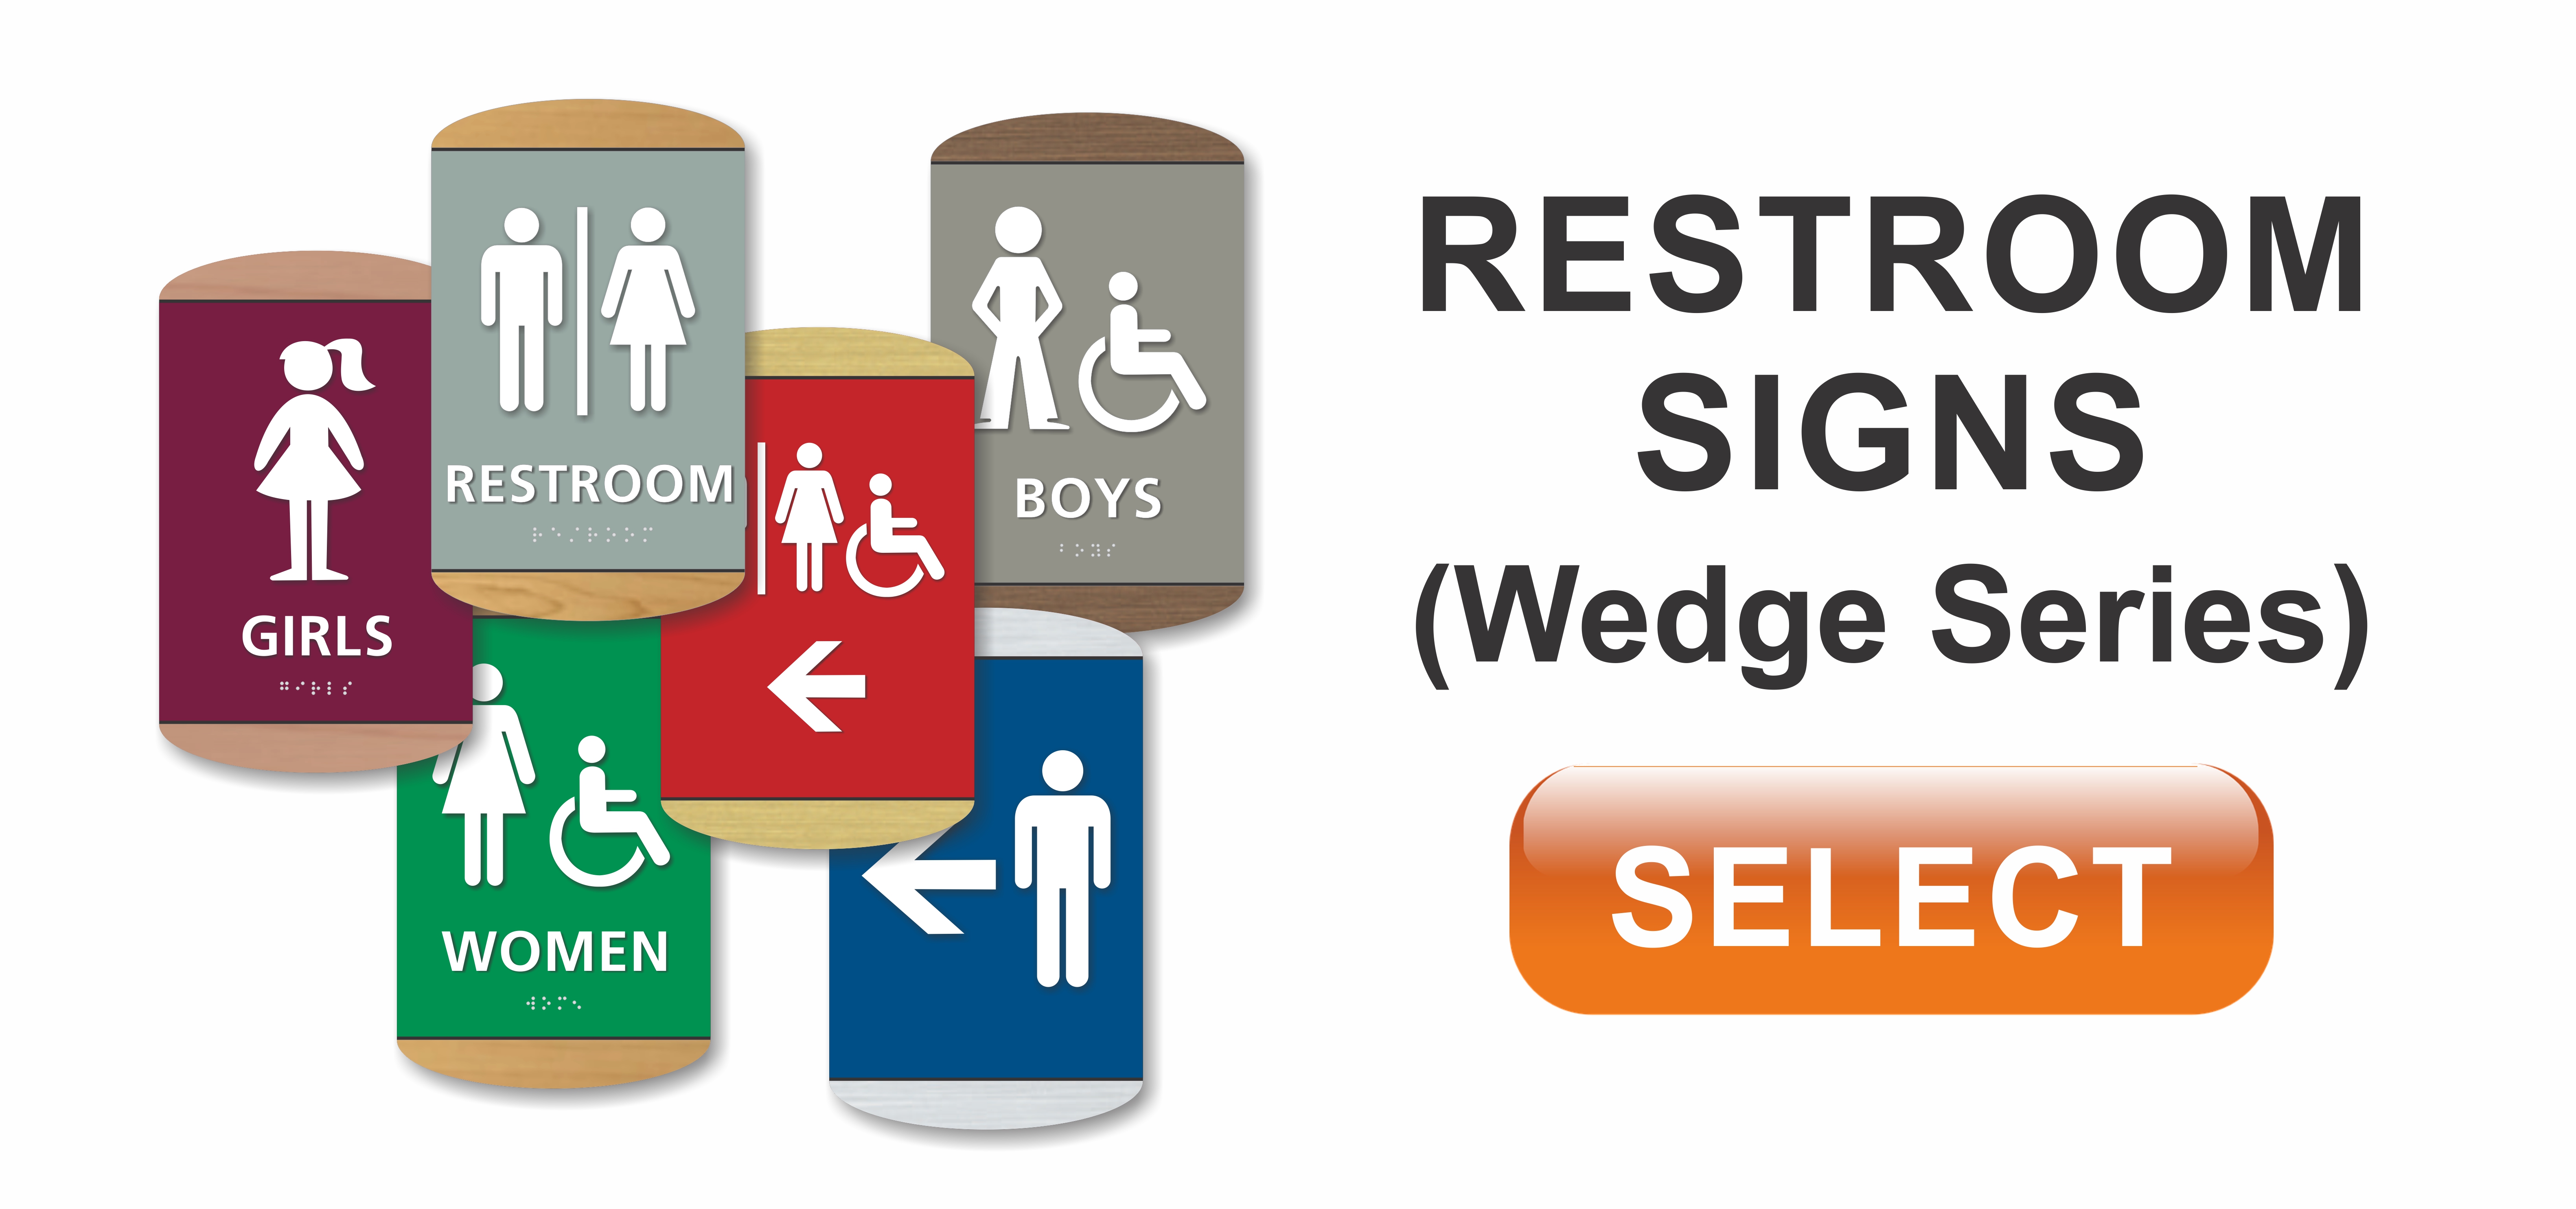 wedge series ADA restroom sign